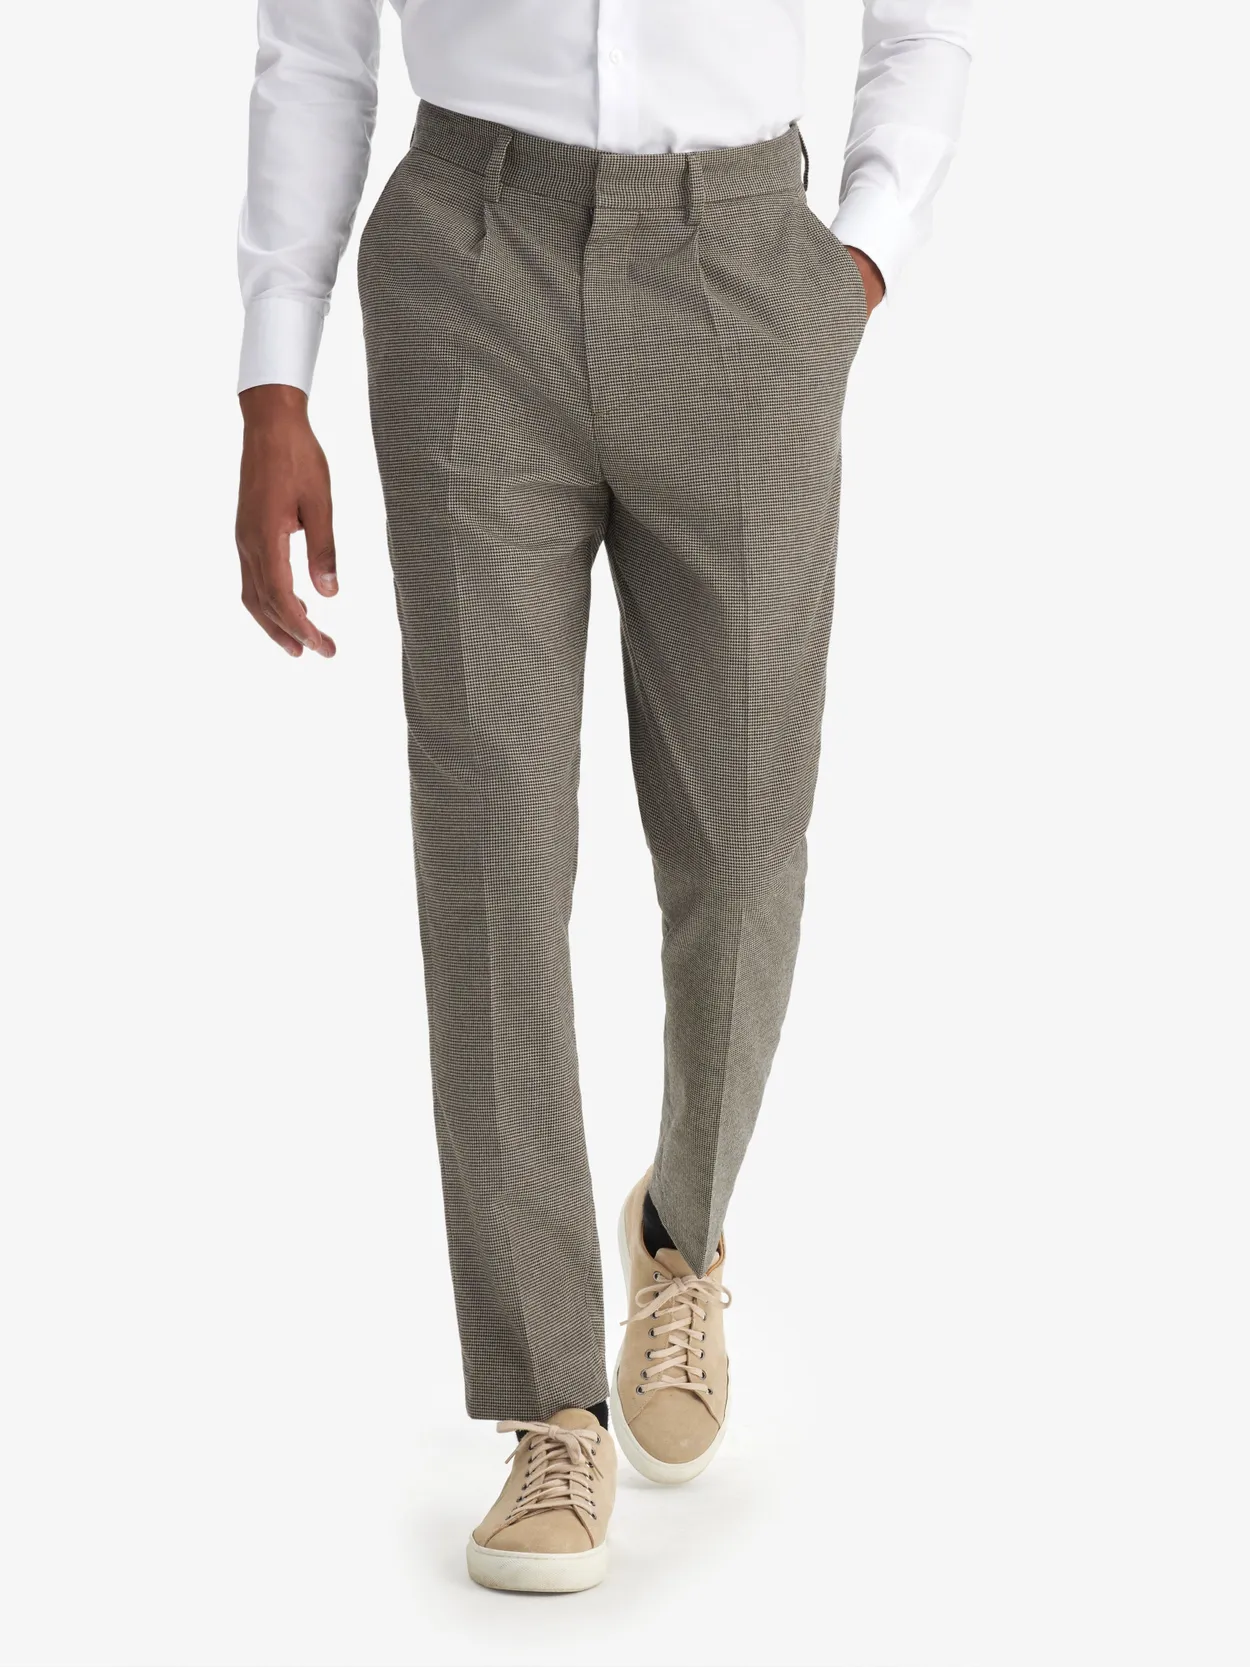 Brown & Beige Flannel Pants